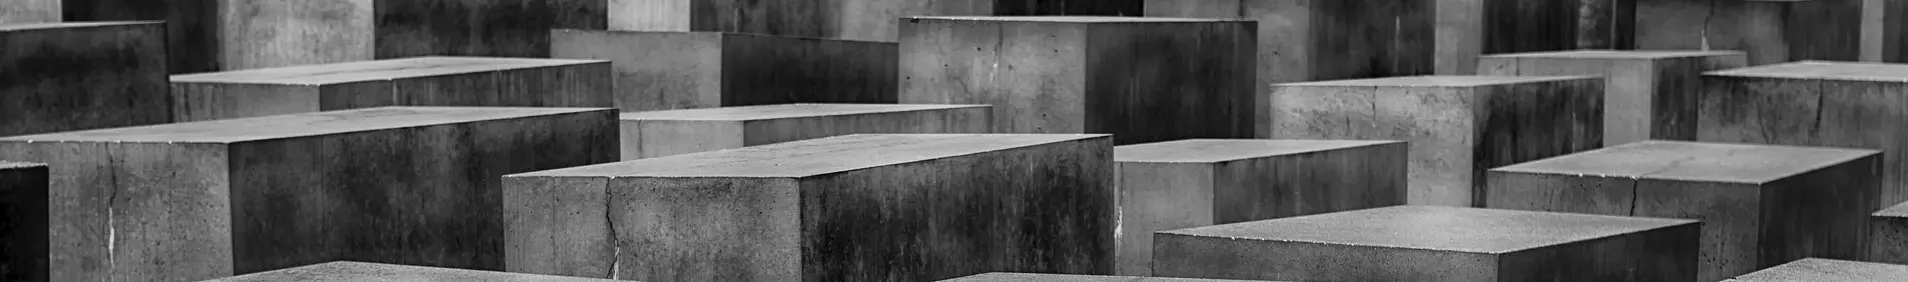 Holocaust Denkmal Berlin :: Ausschnitt aus Bild pixabay User: 3093594 